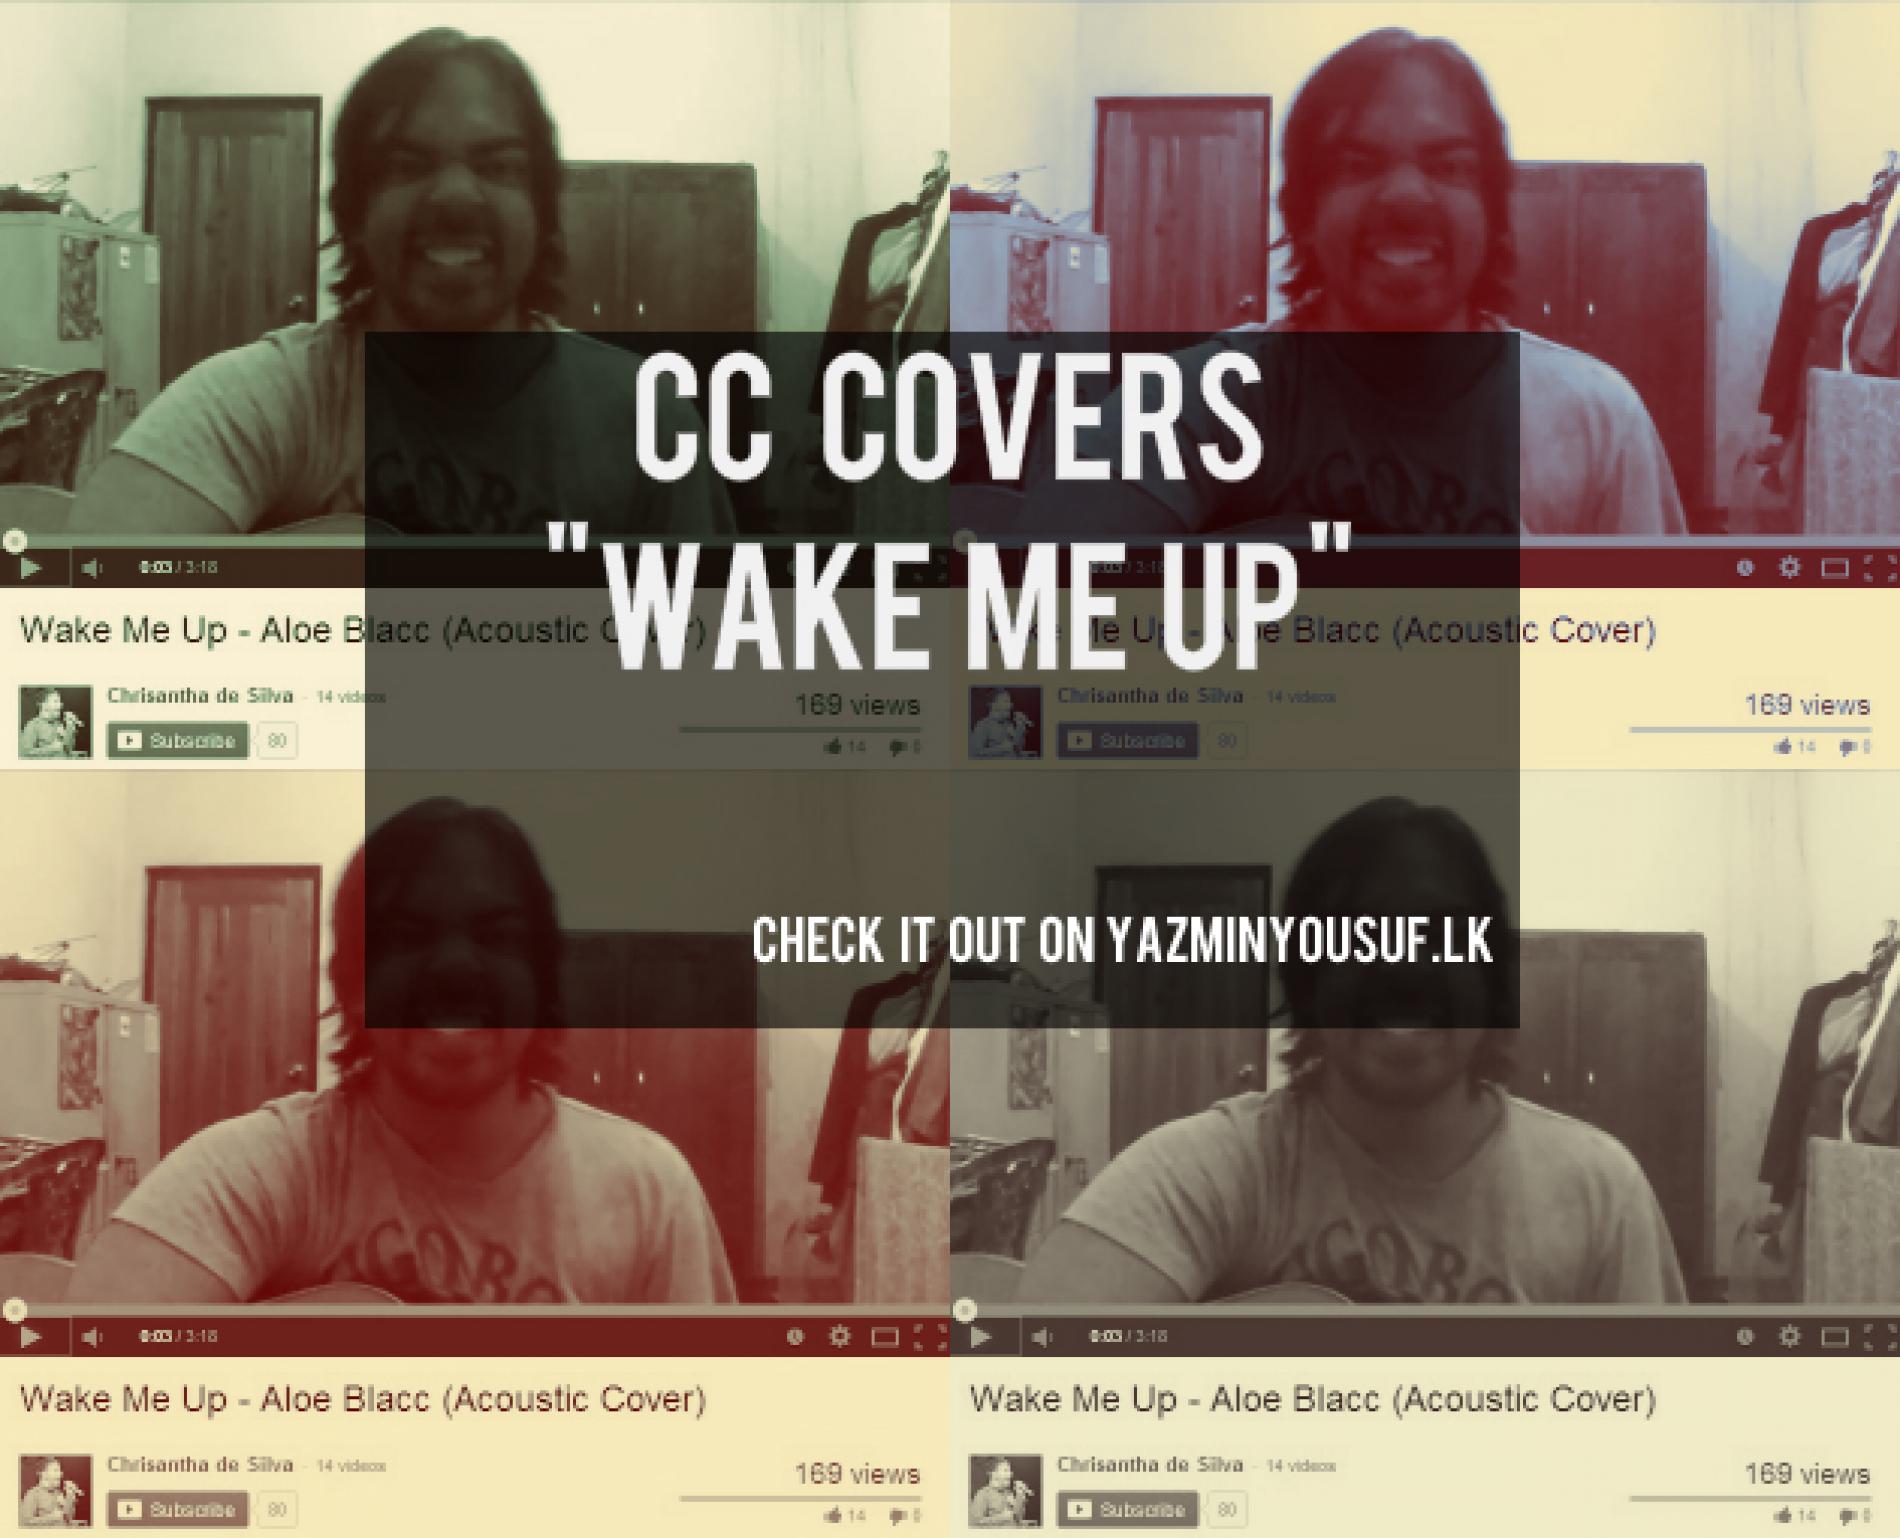 CC Covers “Wake Me Up”